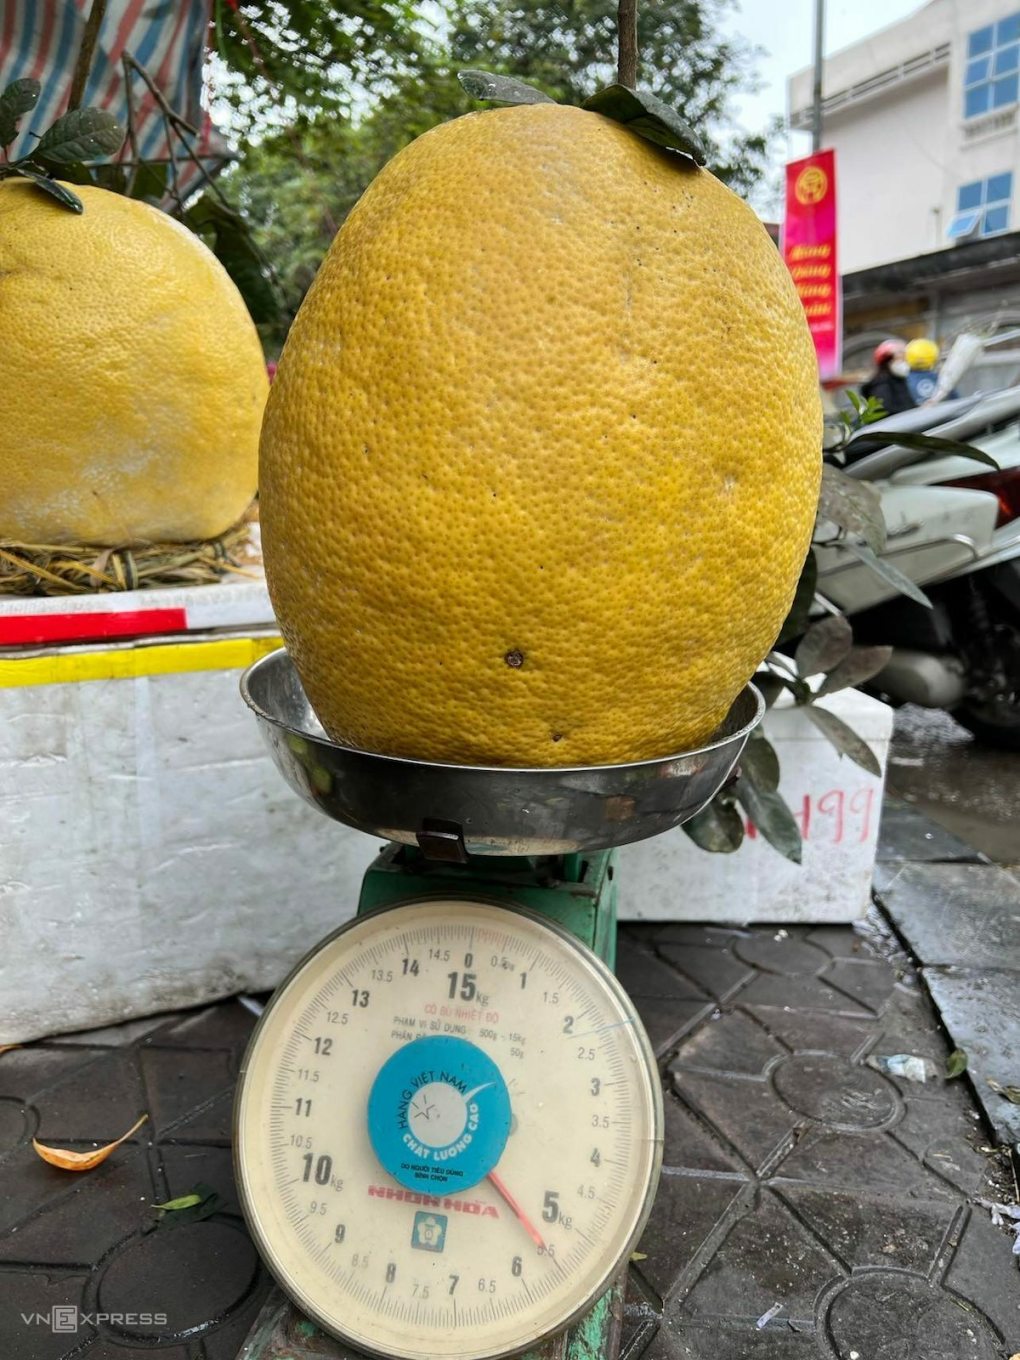 Quả bưởi siêu to cân nặng 5,5 kg được người bán nói giá 700.000 đồng, tại chợ Hà Đông (ảnh chụp màn hình VnExpress).